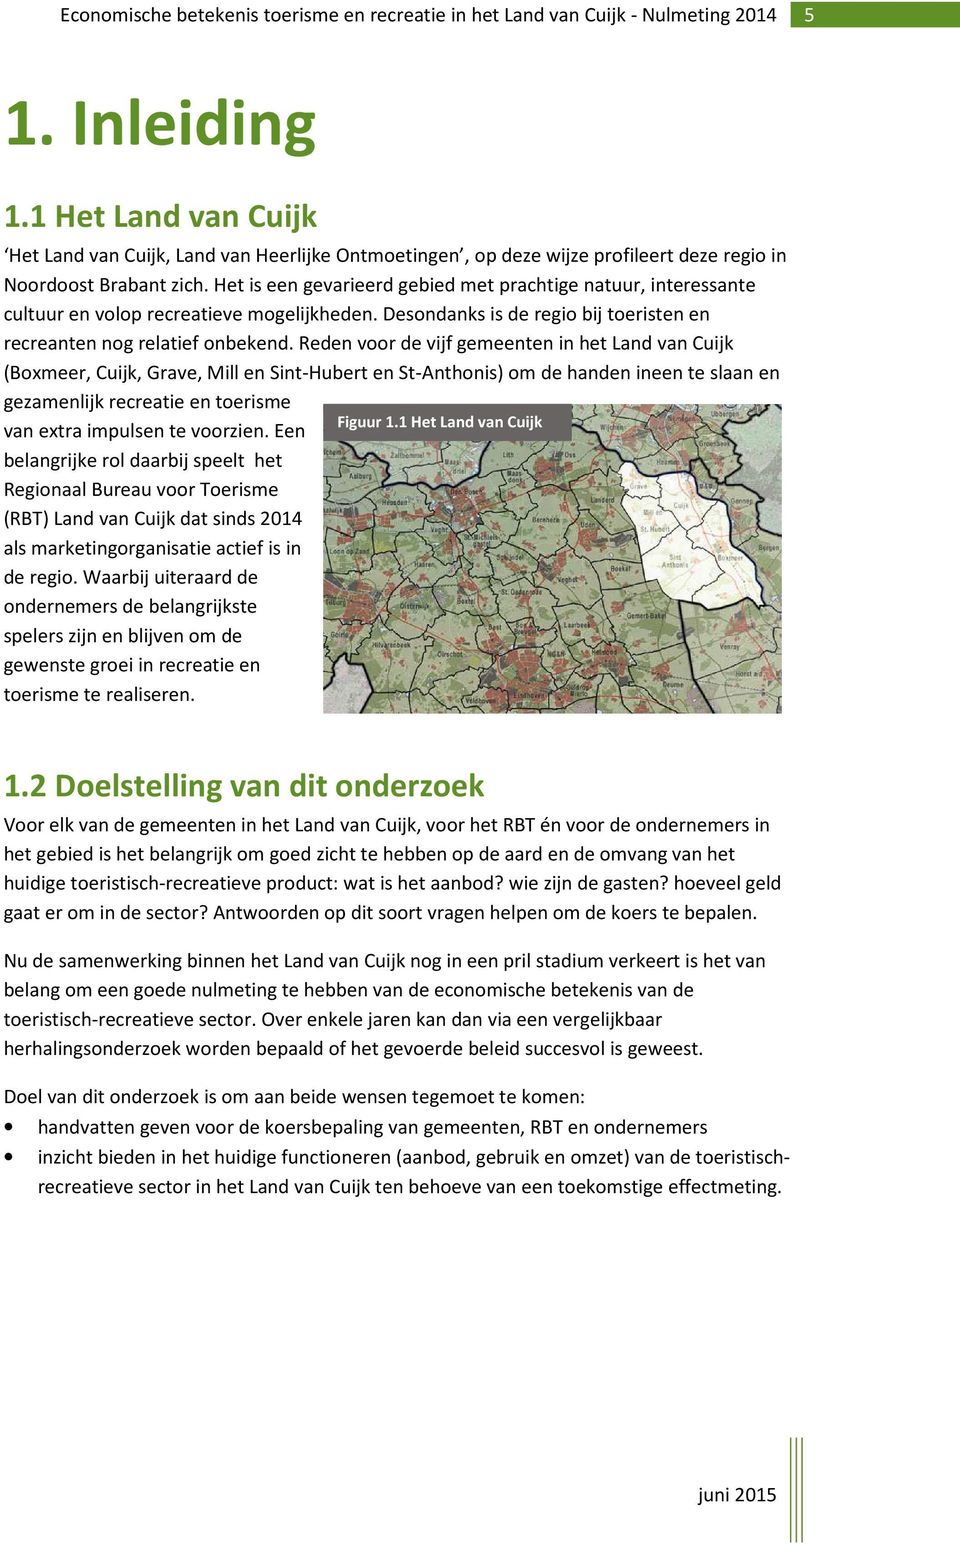 Reden voor de vijf gemeenten in het Land van Cuijk (Boxmeer, Cuijk, Grave, Mill en Sint-Hubert en St-Anthonis) om de handen ineen te slaan en gezamenlijk recreatie en toerisme Figuur 1.